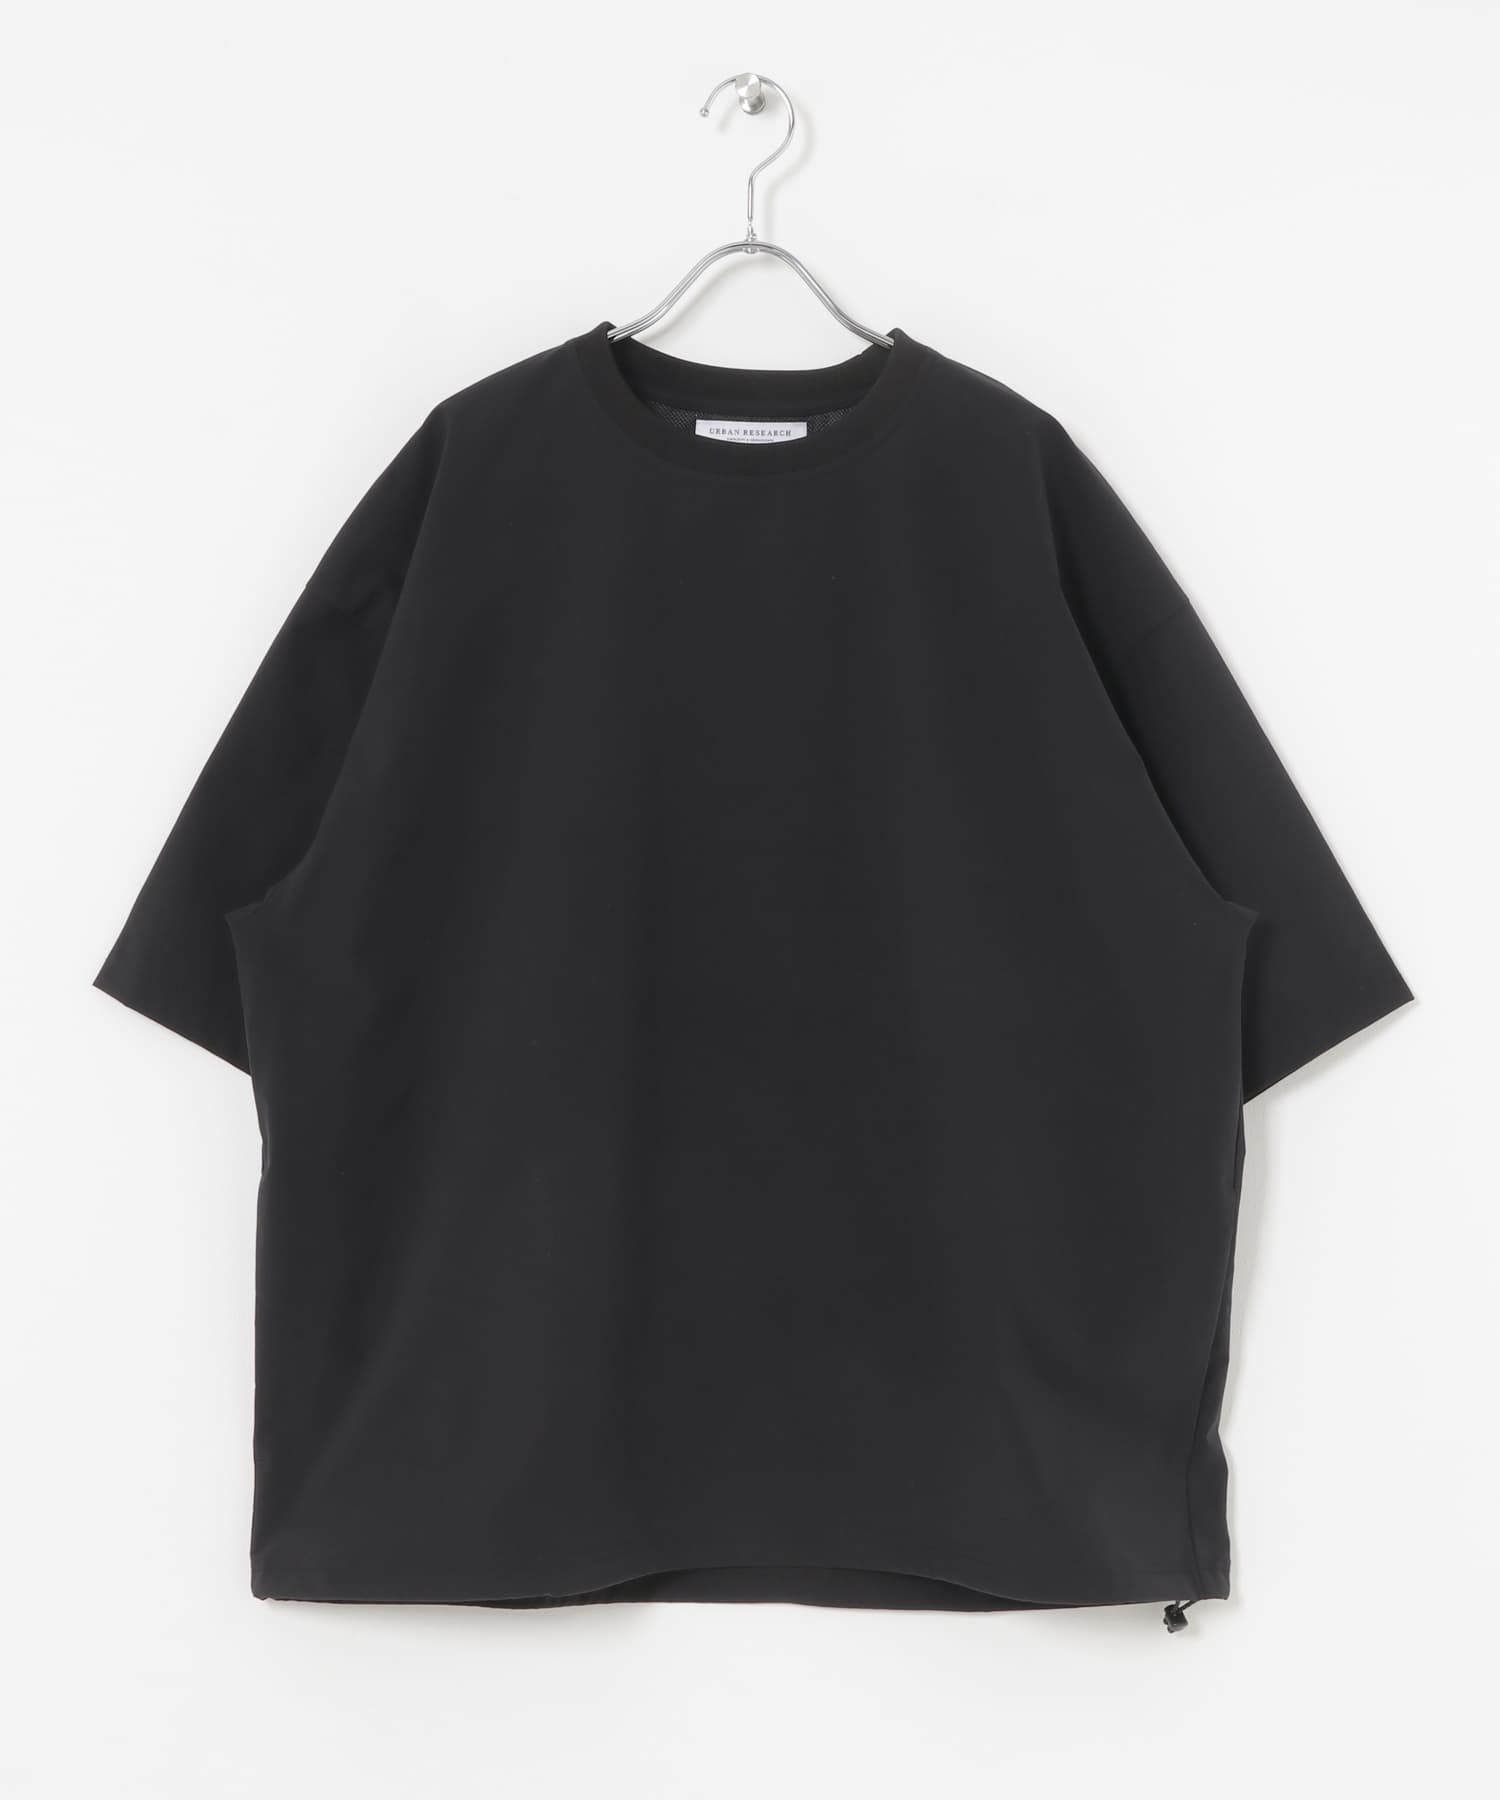 SOLOTEX® 高機能短袖T恤(黑色-L-BLACK)